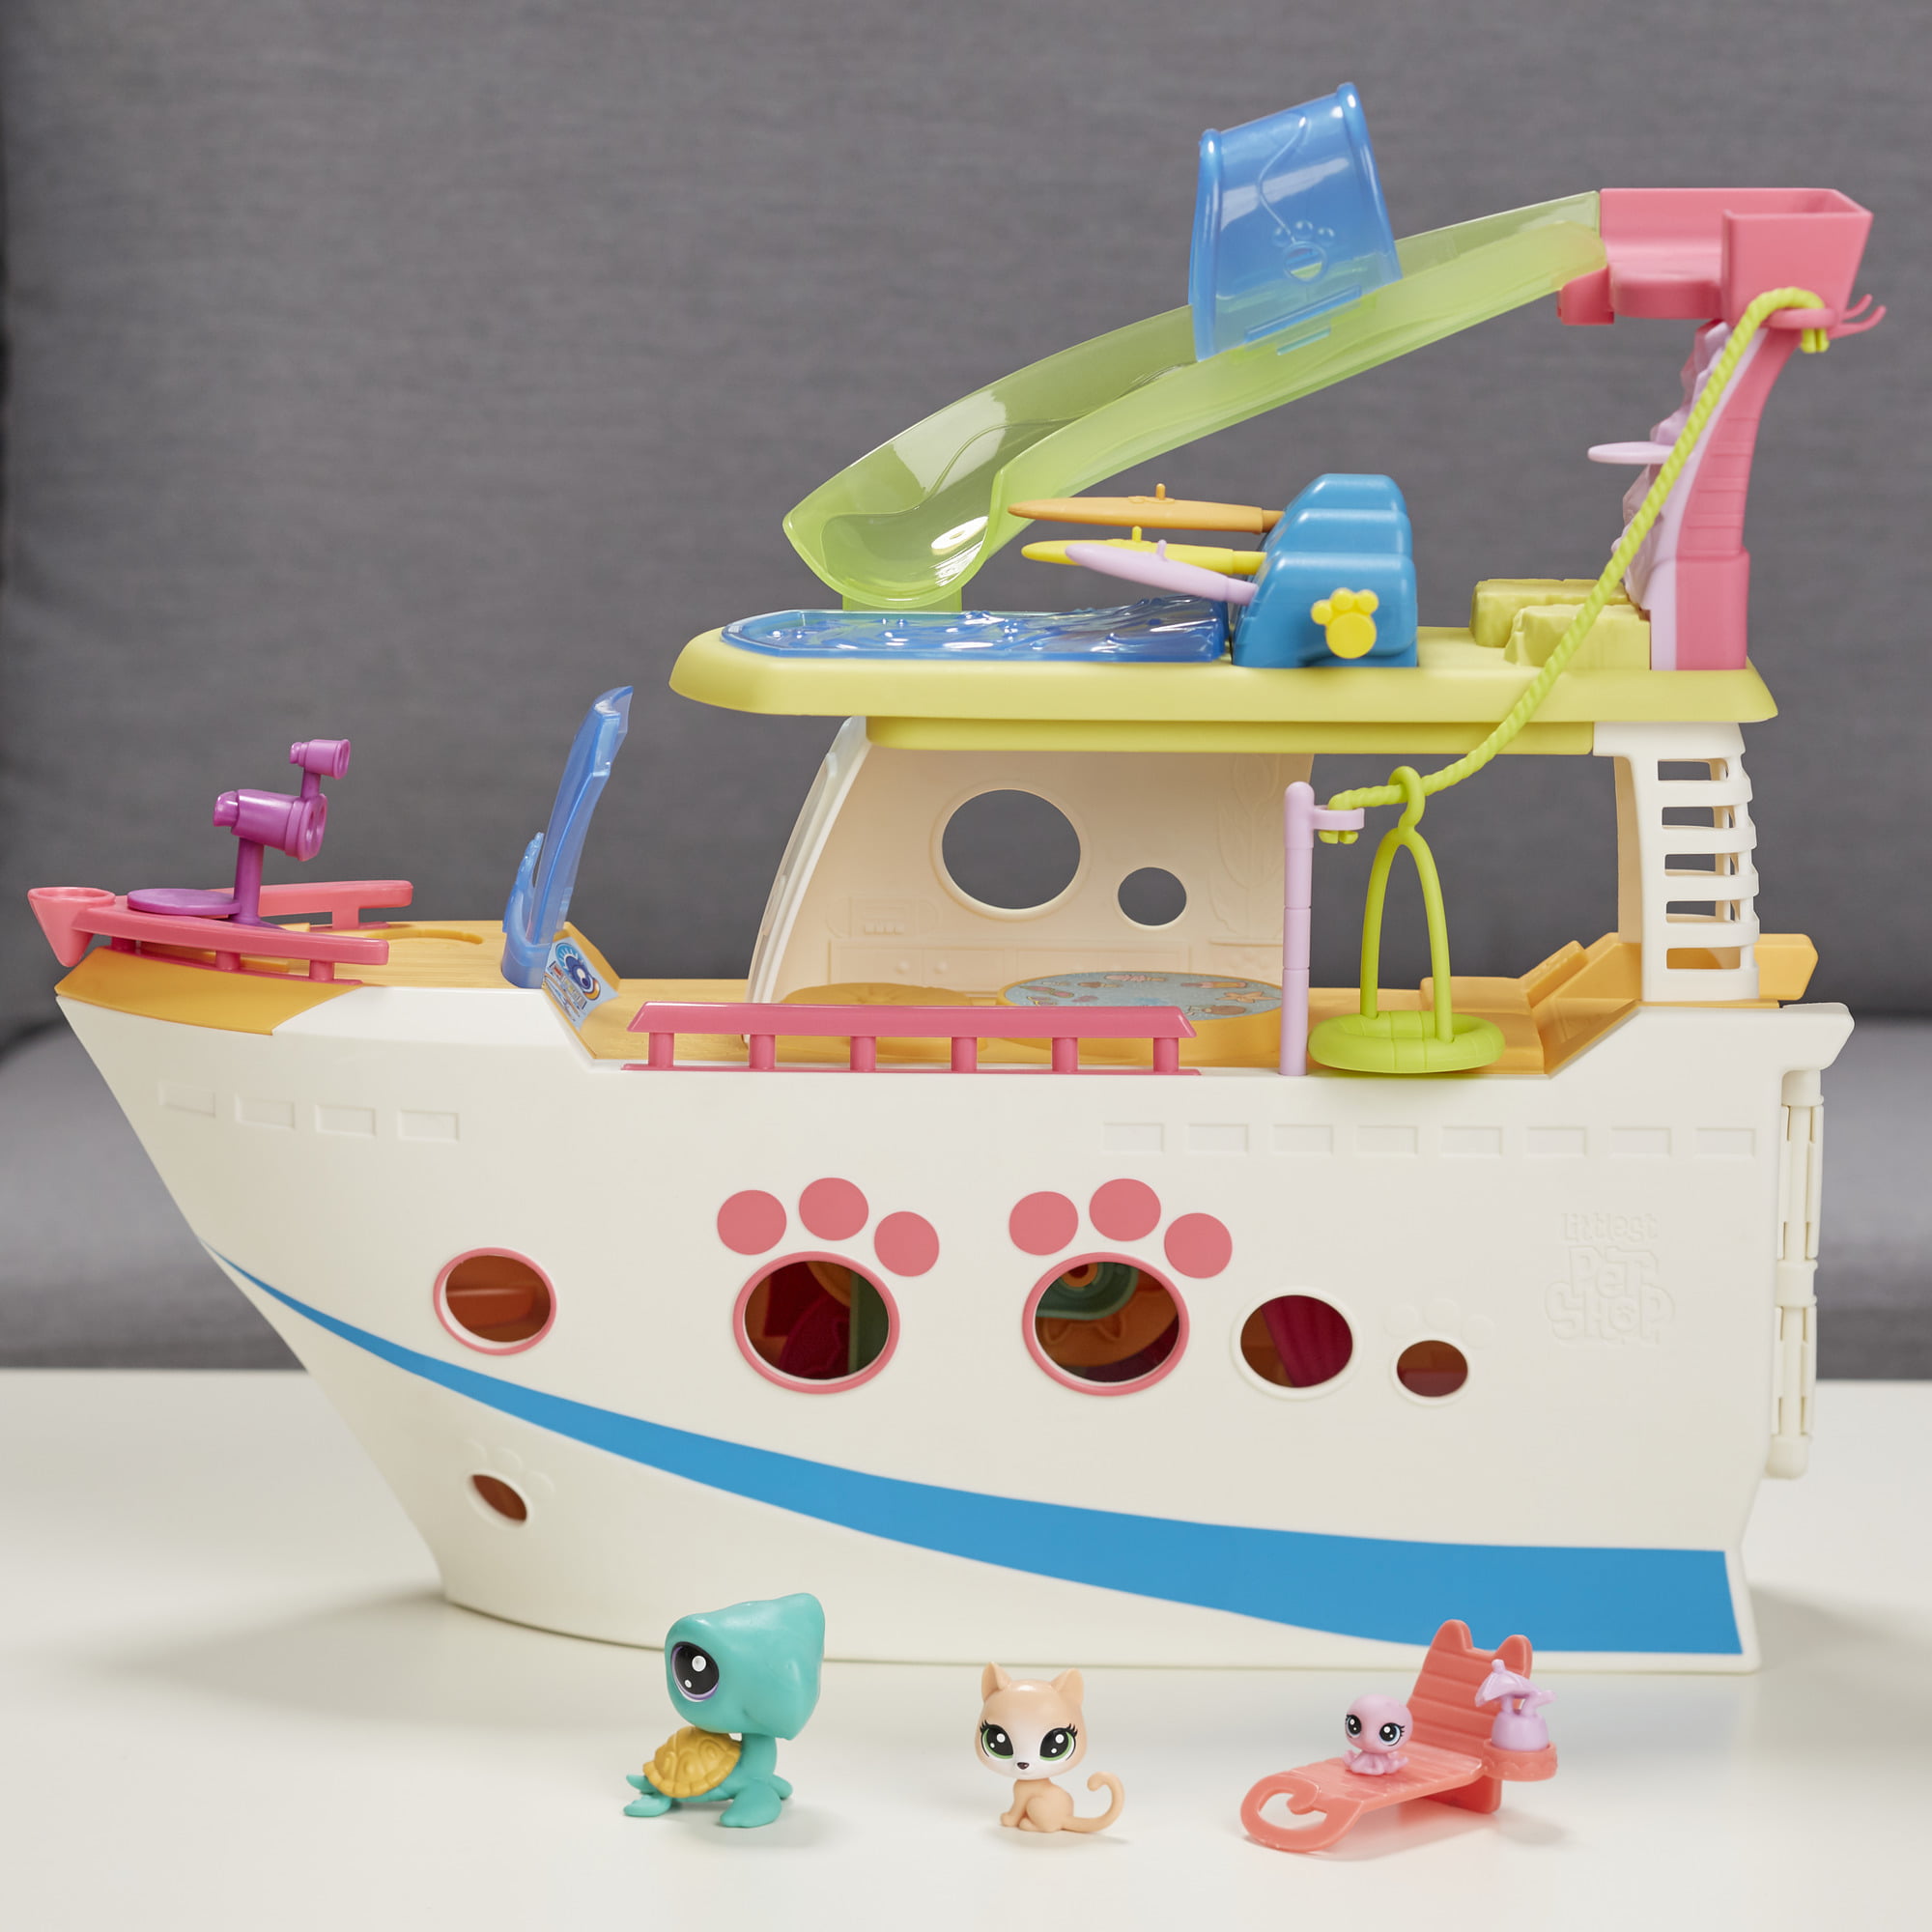 littlest pet shop boat